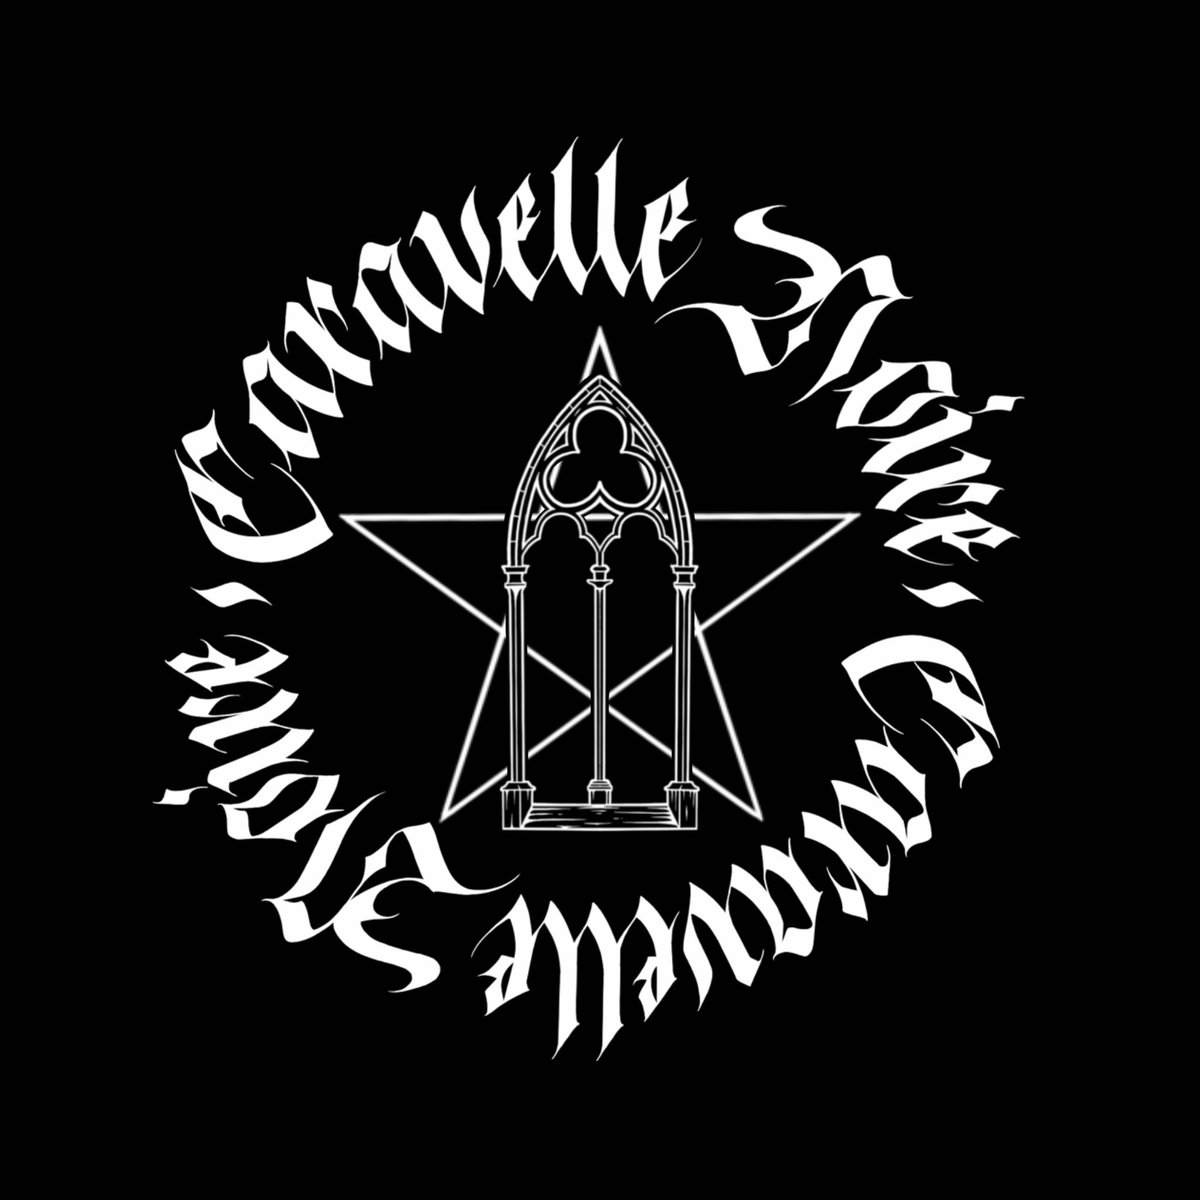 4 ans que j'ai créé Caravelle Noire, et j'ai enfin mon logo ! 🎉
Il vous plaît ?

Créé par l'artiste calligraphe @/mederick_infektvs sur Insta 🖤